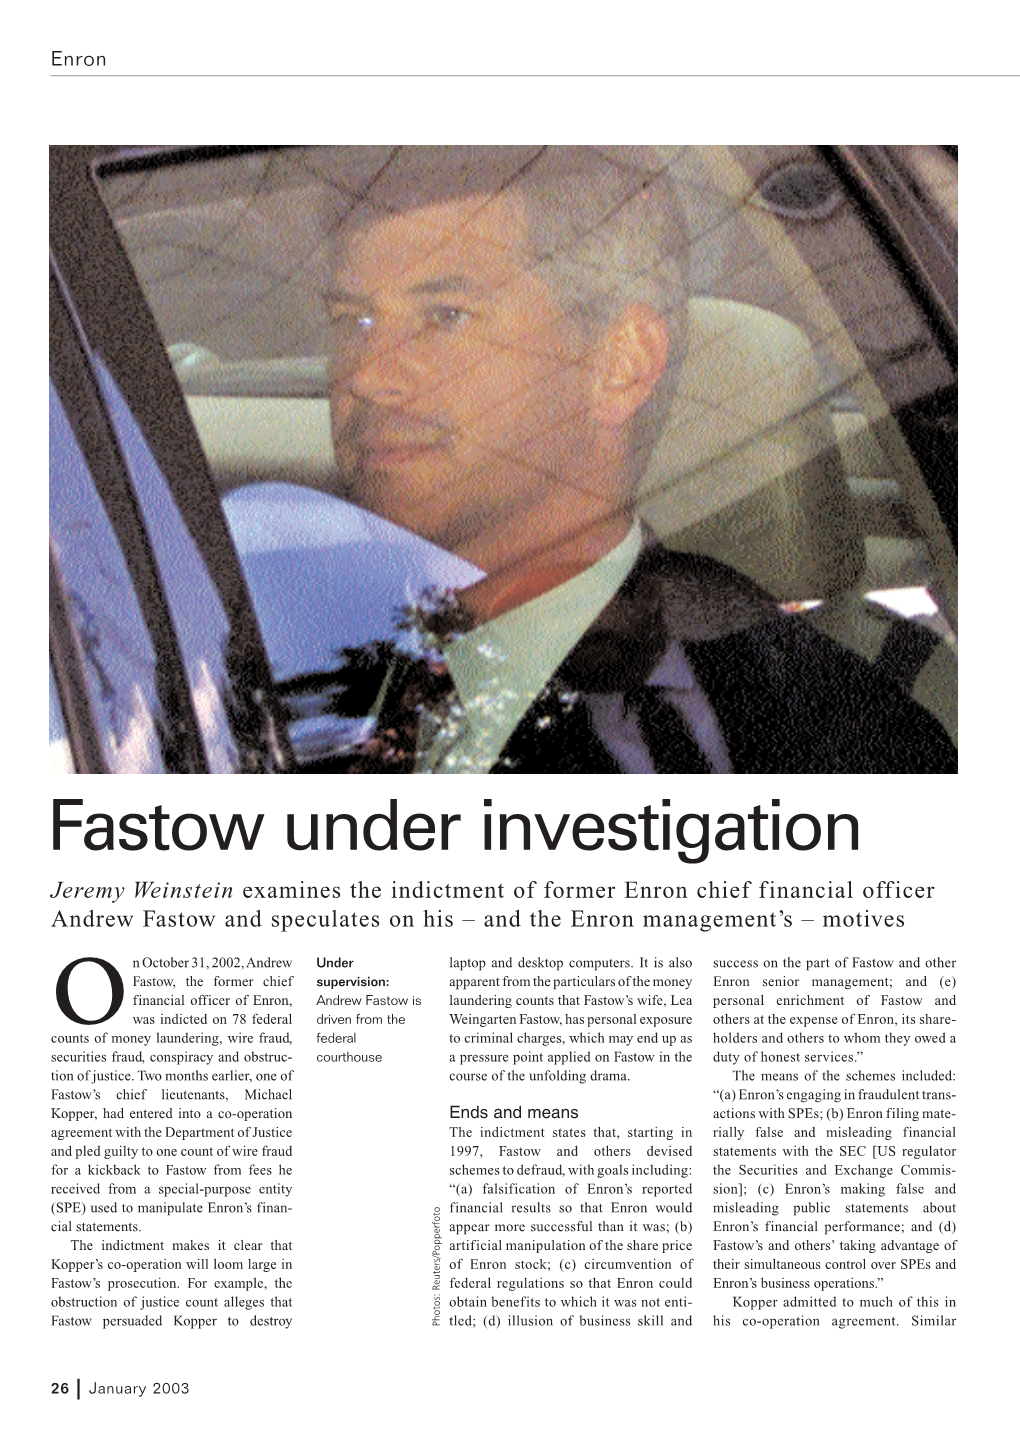 Fastow Under Investigation